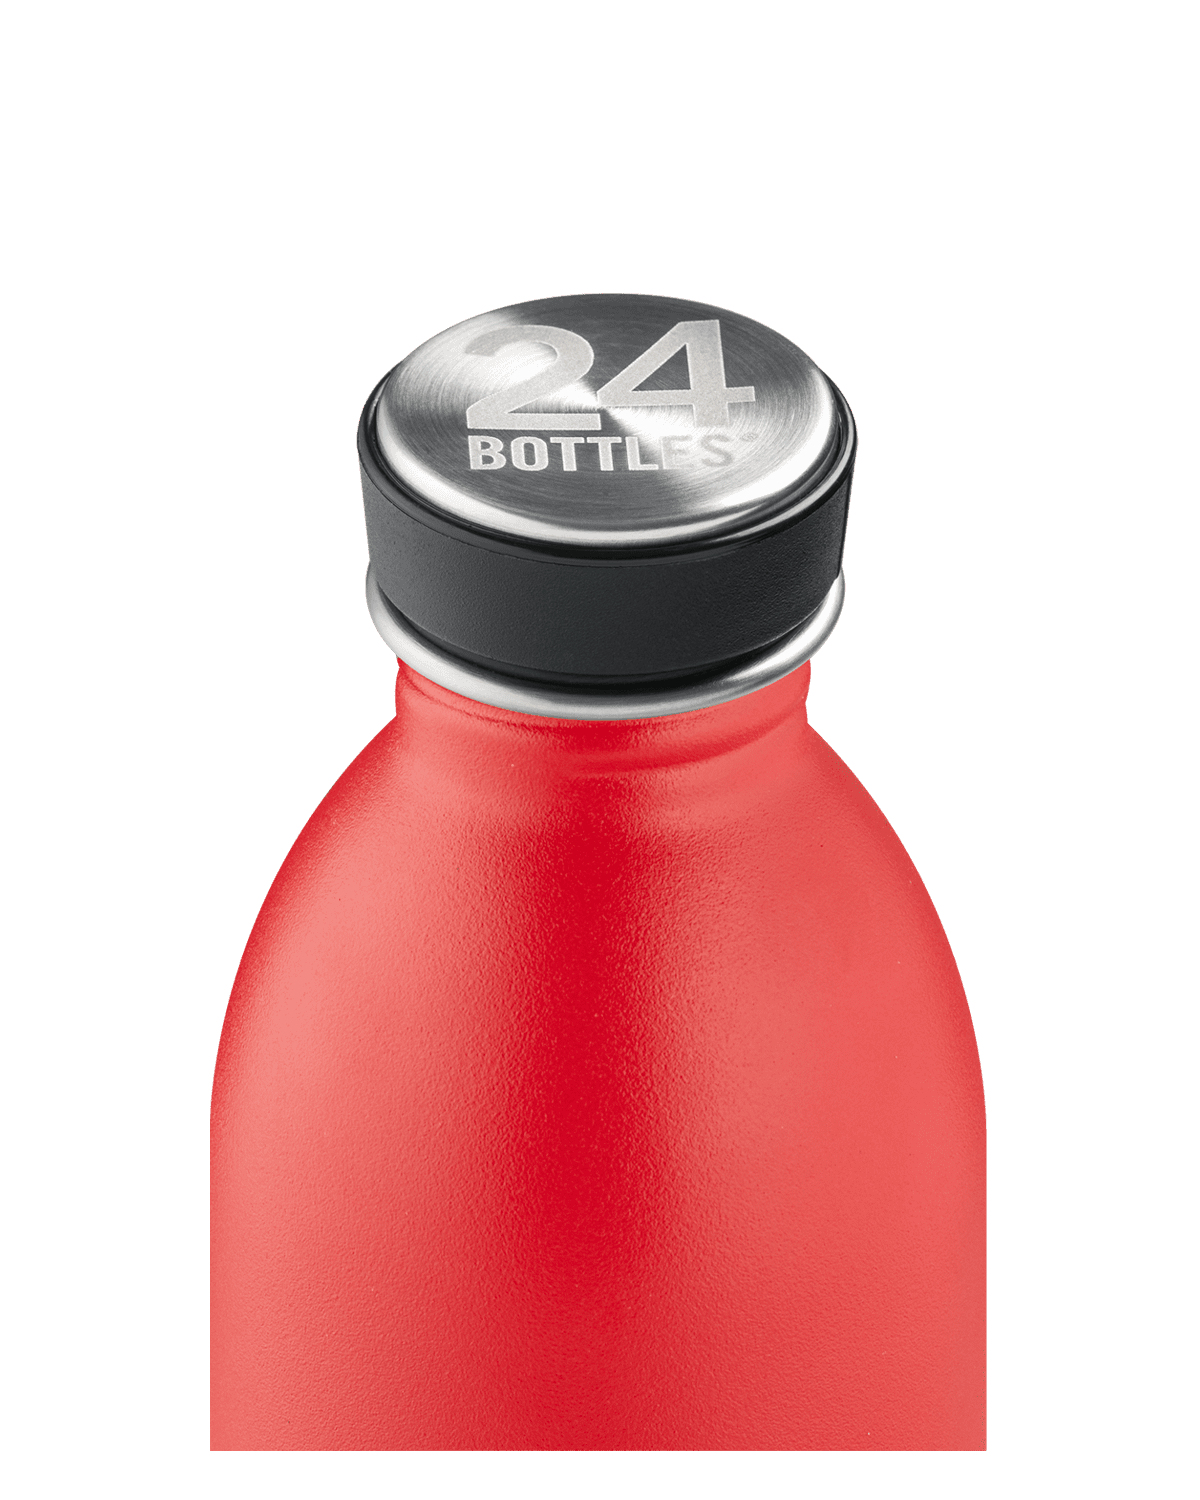 24 bottles Hot Red - 250 ml F088824-0392